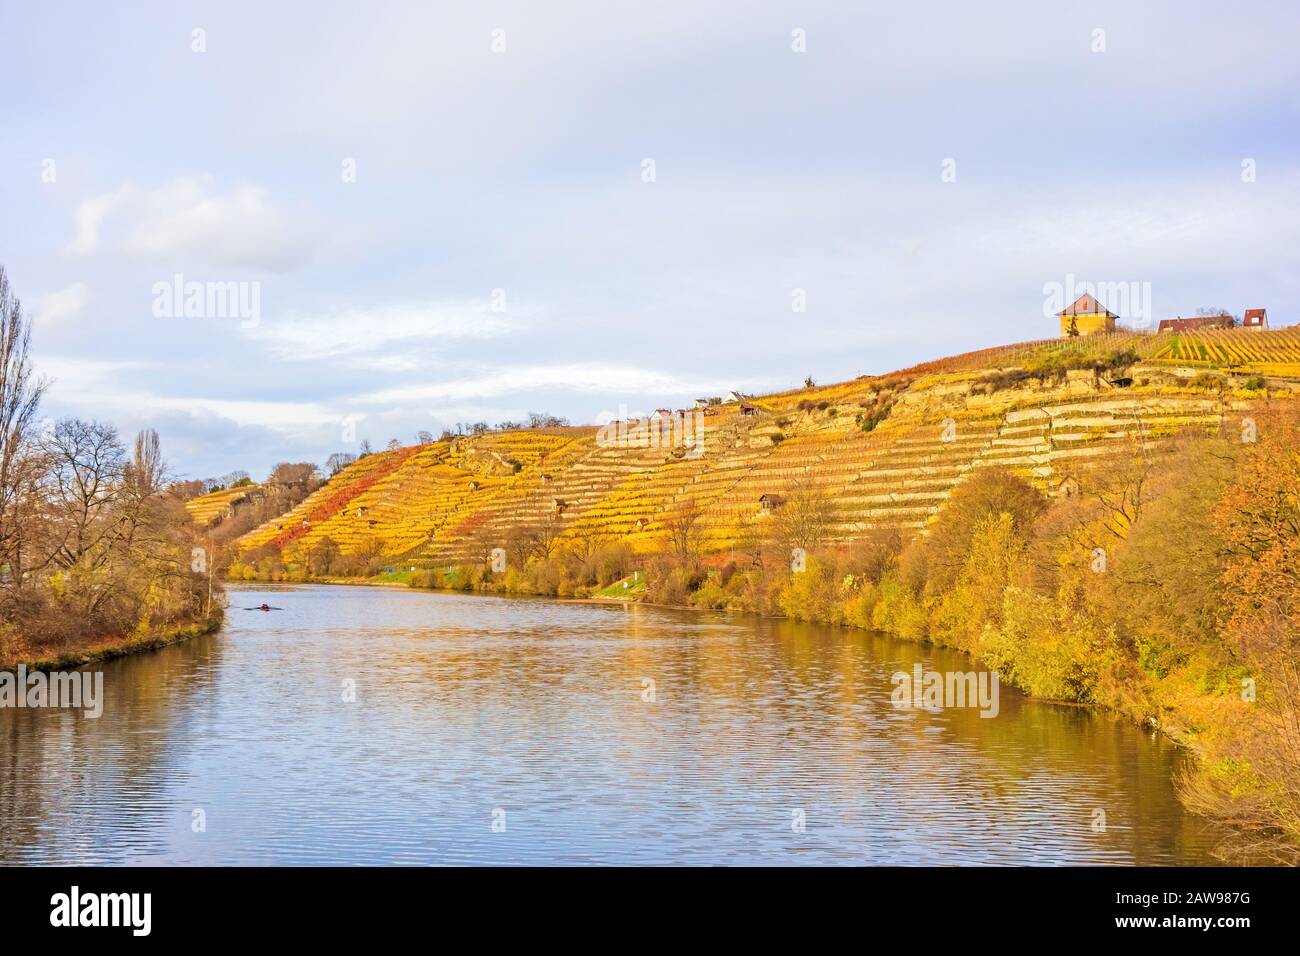 Vigneto in collina del fiume Neckar, Stoccarda, Germania - viti in autunno con foglie giallo dorato Foto Stock